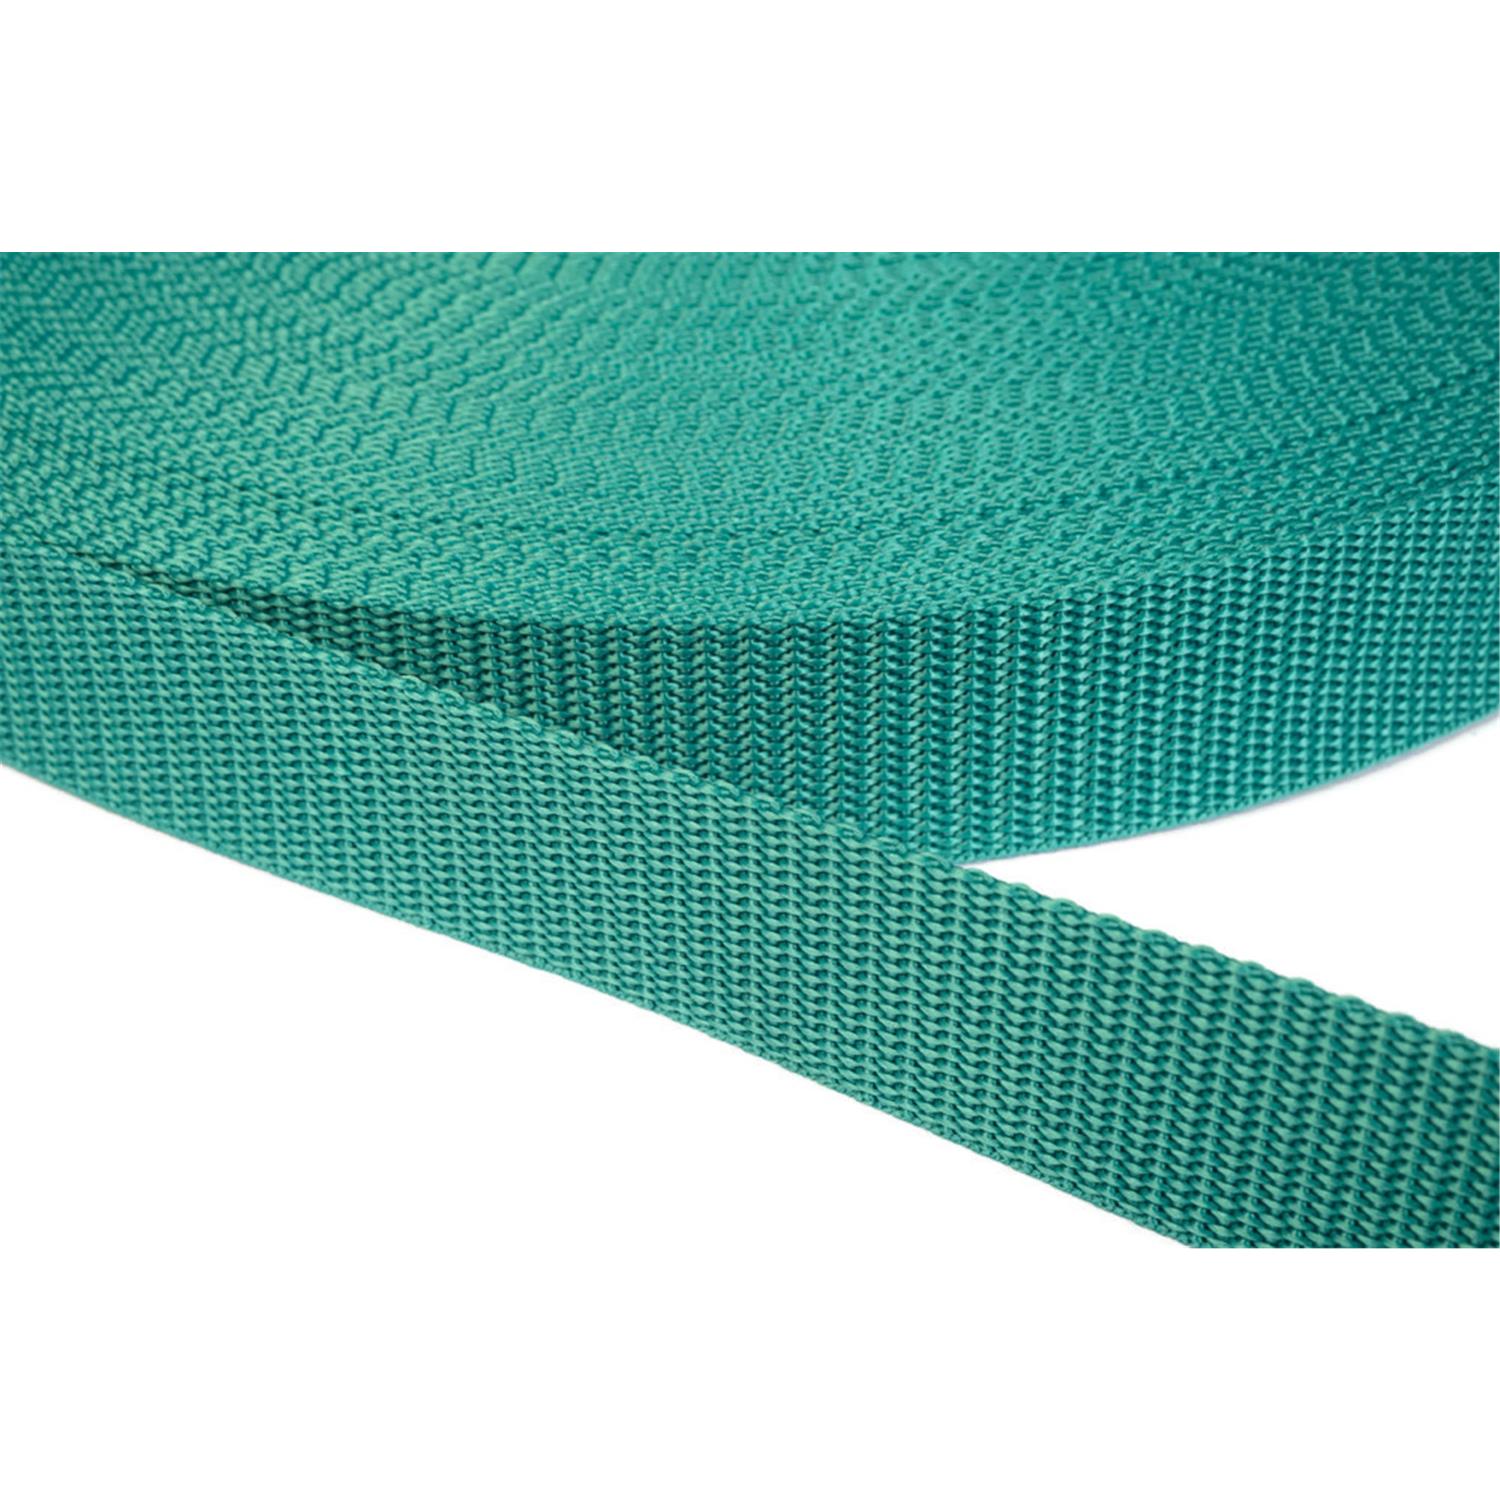 Gurtband 40mm breit aus Polypropylen in 41 Farben 31 - smaragdgrün 12 Meter